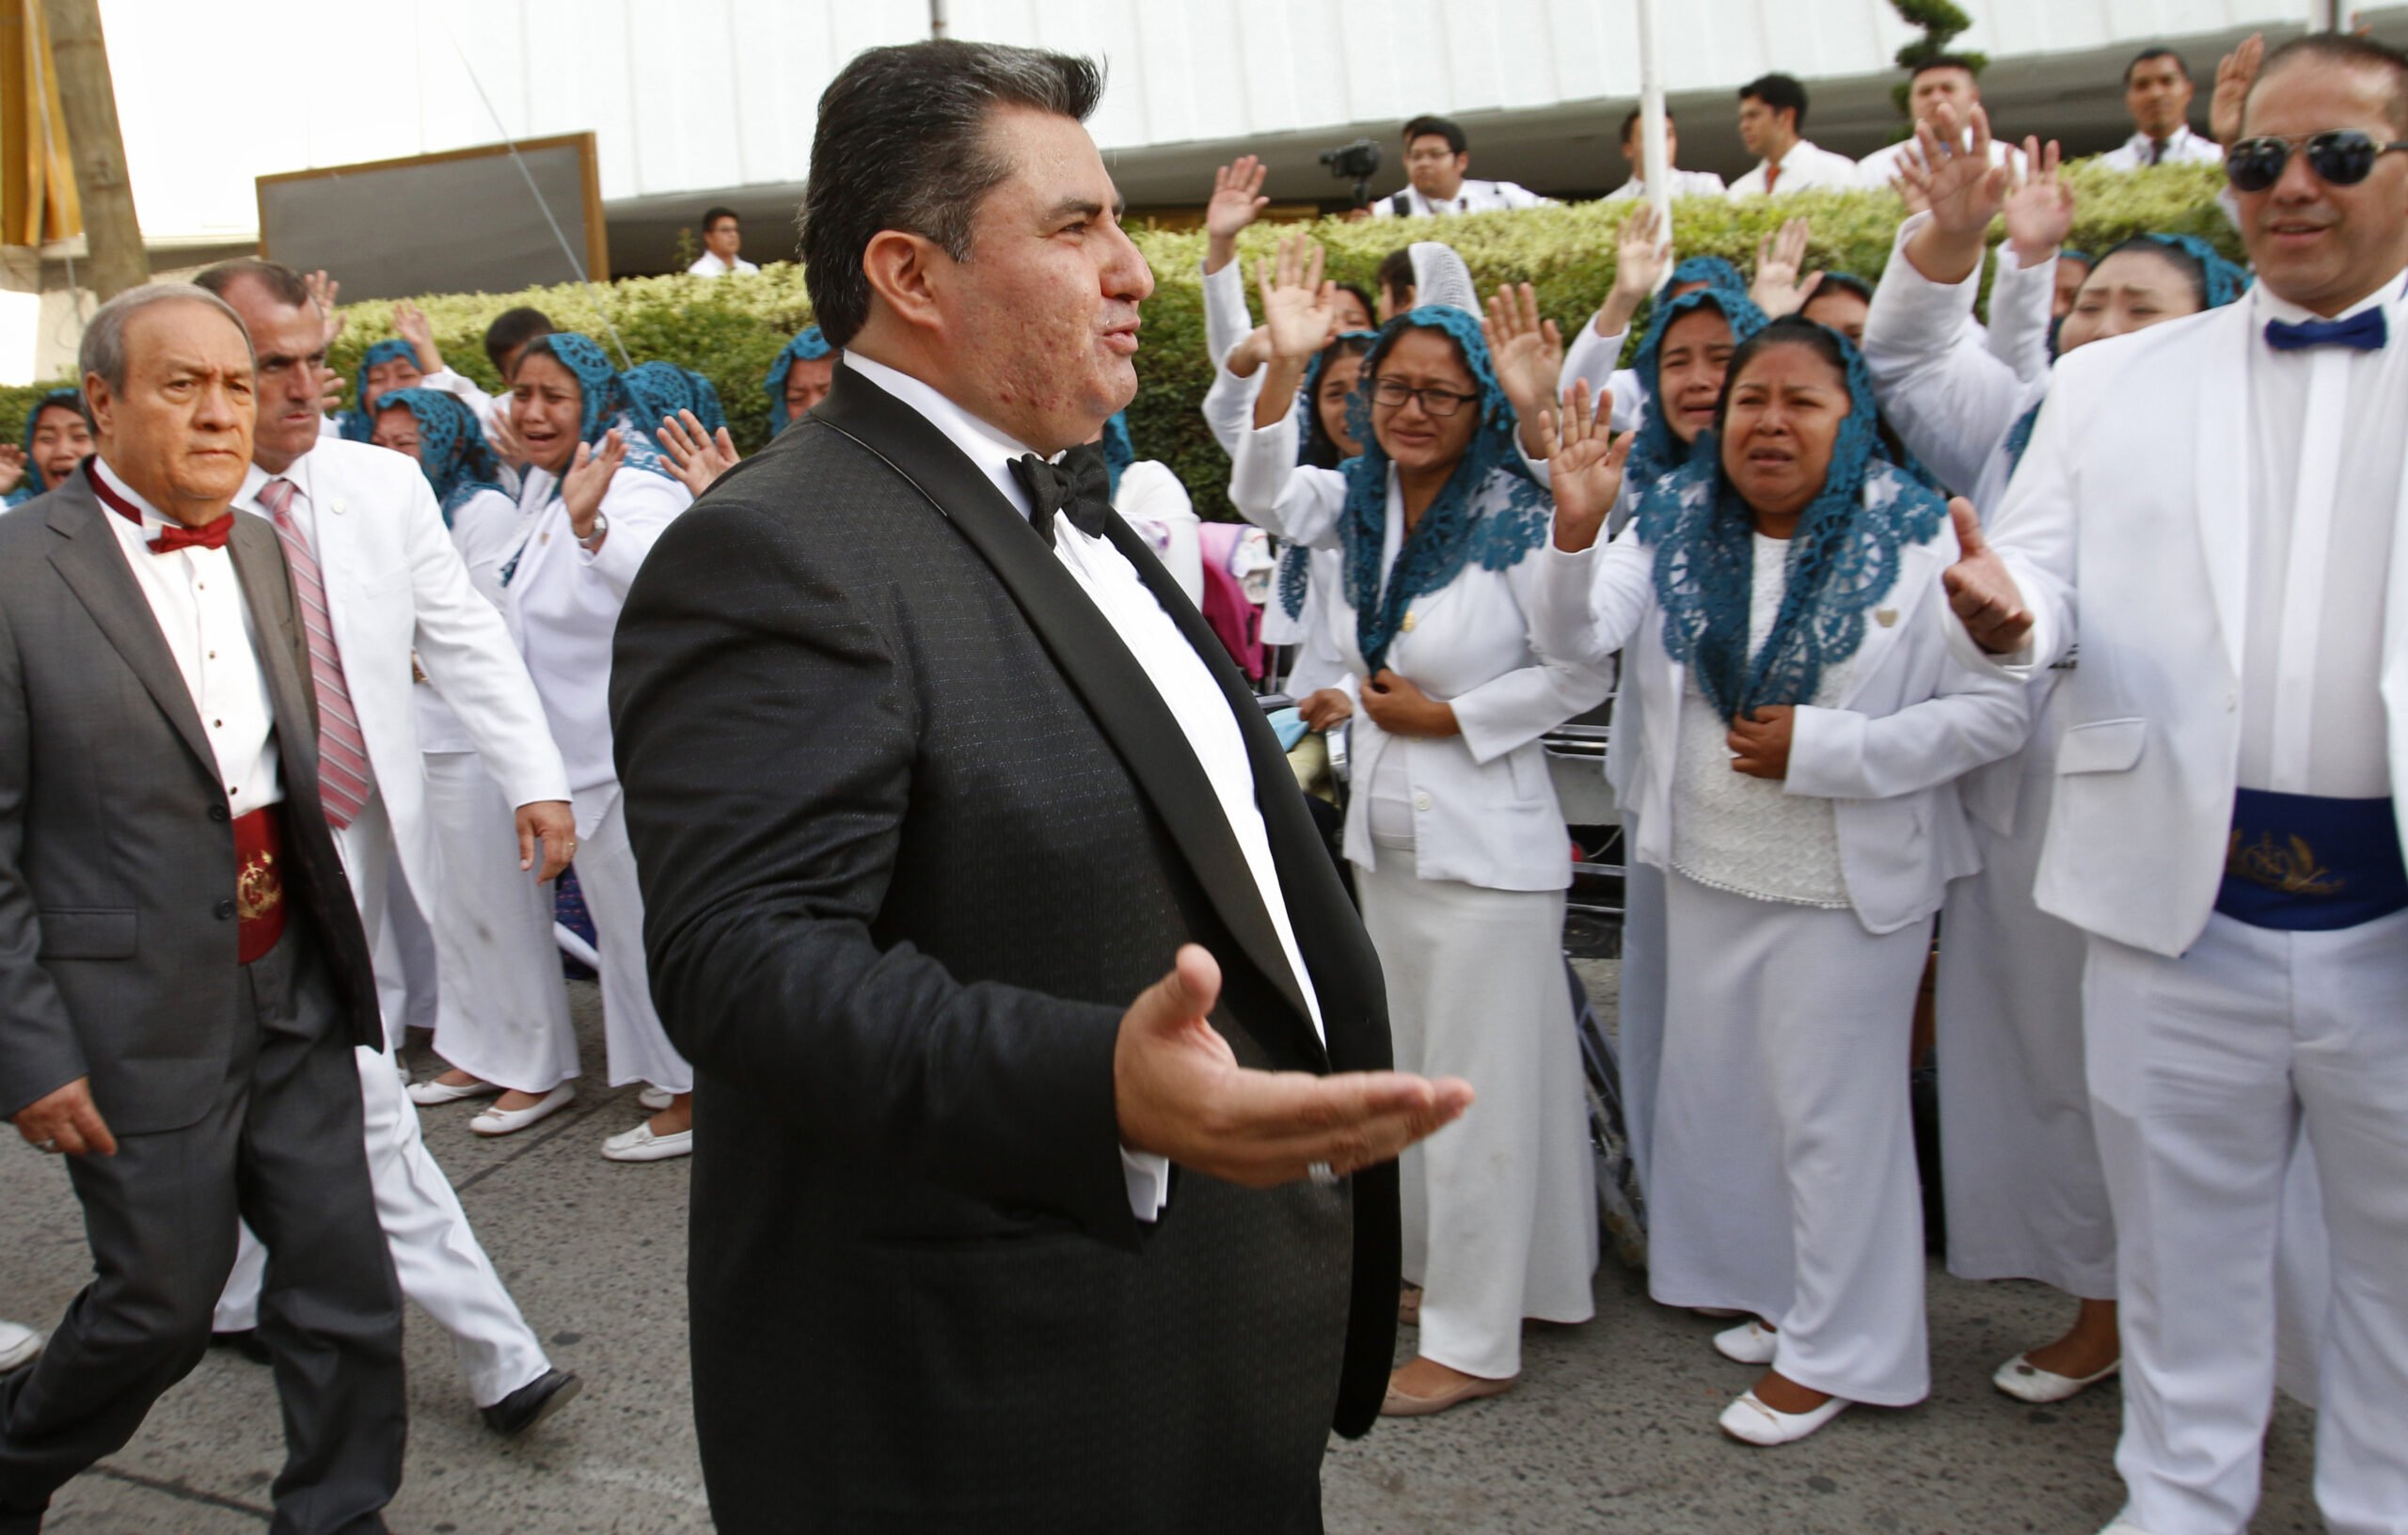 Naasón Joaquín García greets members of his church, La Luz del Mundo, in Guadalajara, Mexico, on Aug. 14, 2018. García pleaded guilty June 3, 2022, to sexually abusing three girls, California state prosecutors said. (AP Photo/File)